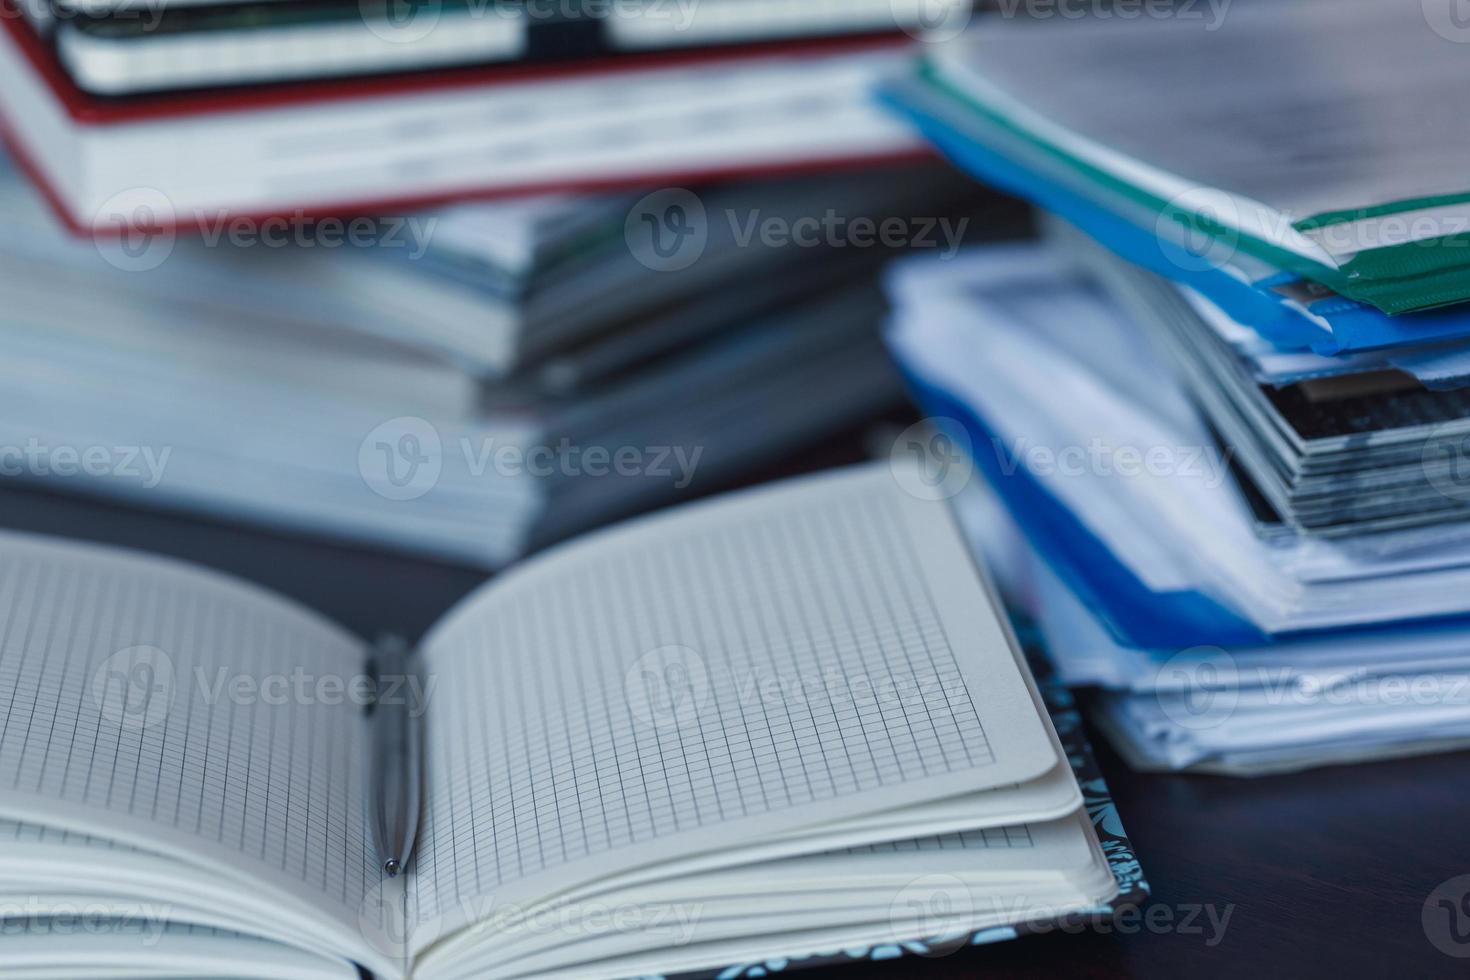 ampla pilha do revista, caderno e livros fechar-se foto